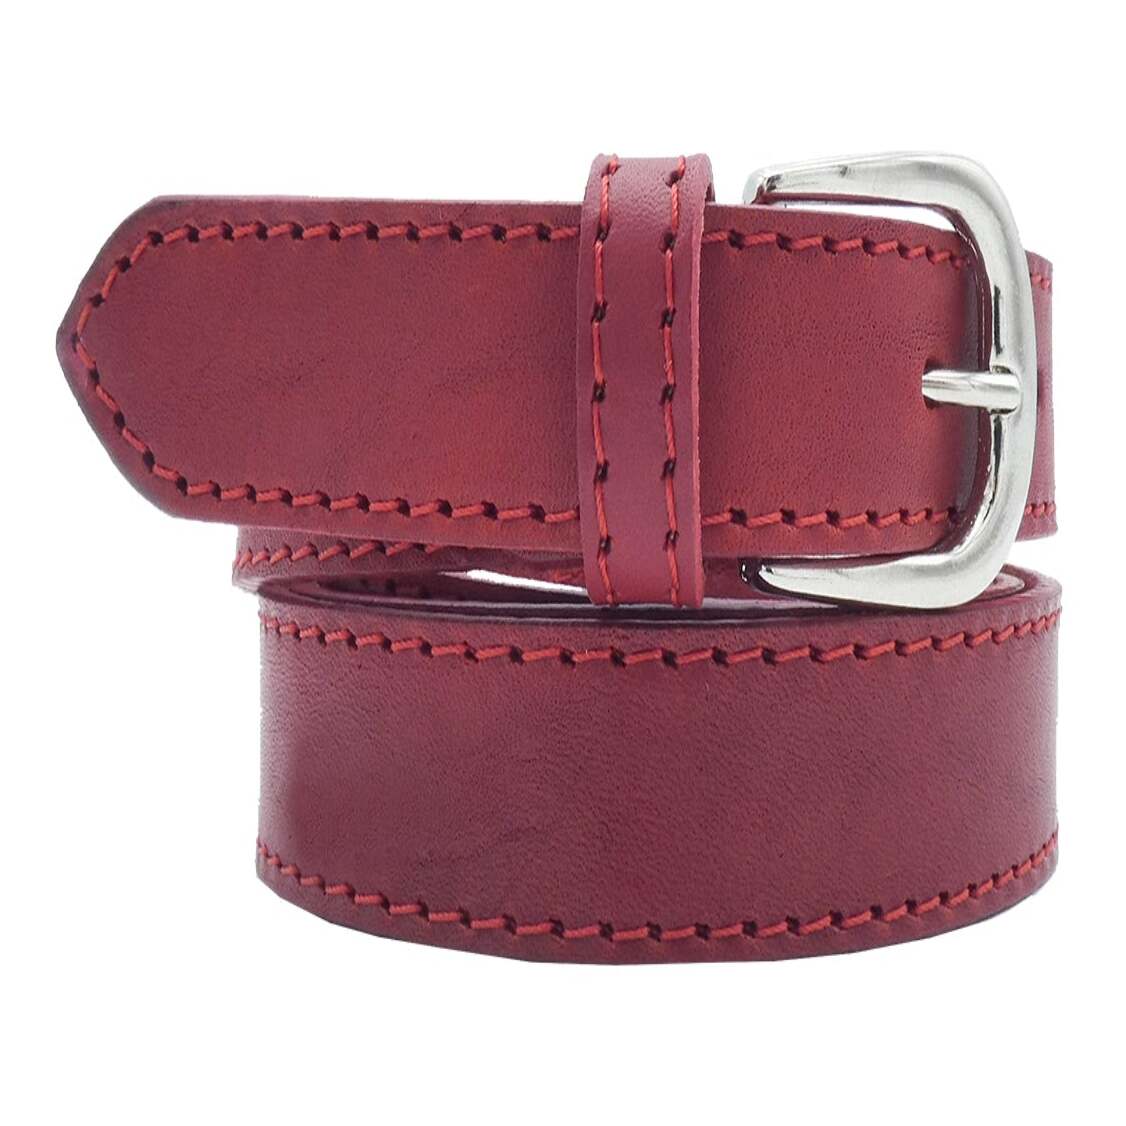 2.5cm Leonardo leather belt with satin nickel zamak buckle